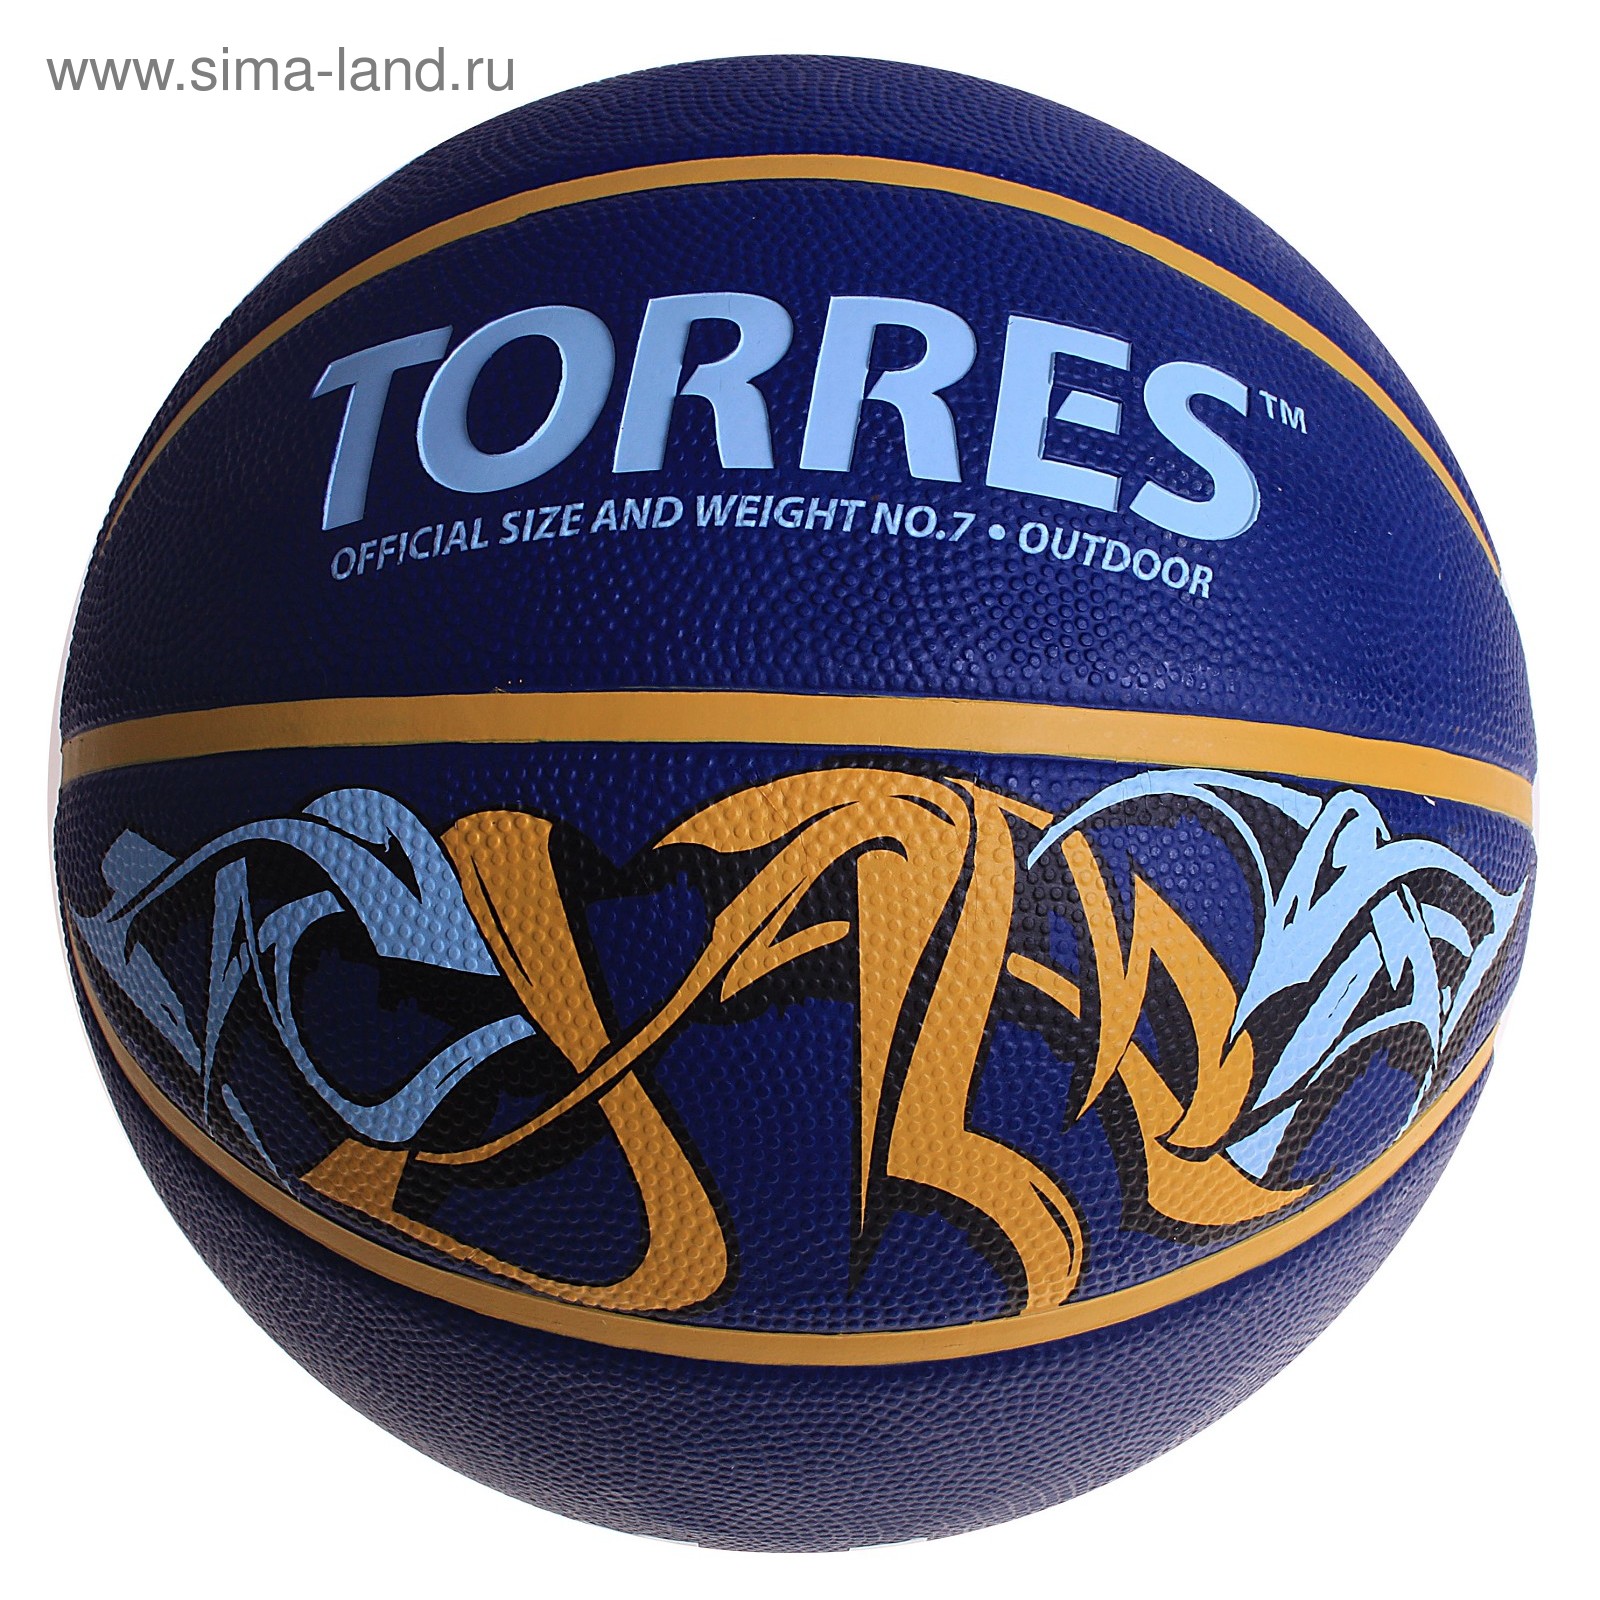 Мяч баскетбольный Torres Jam, B00047, размер 7